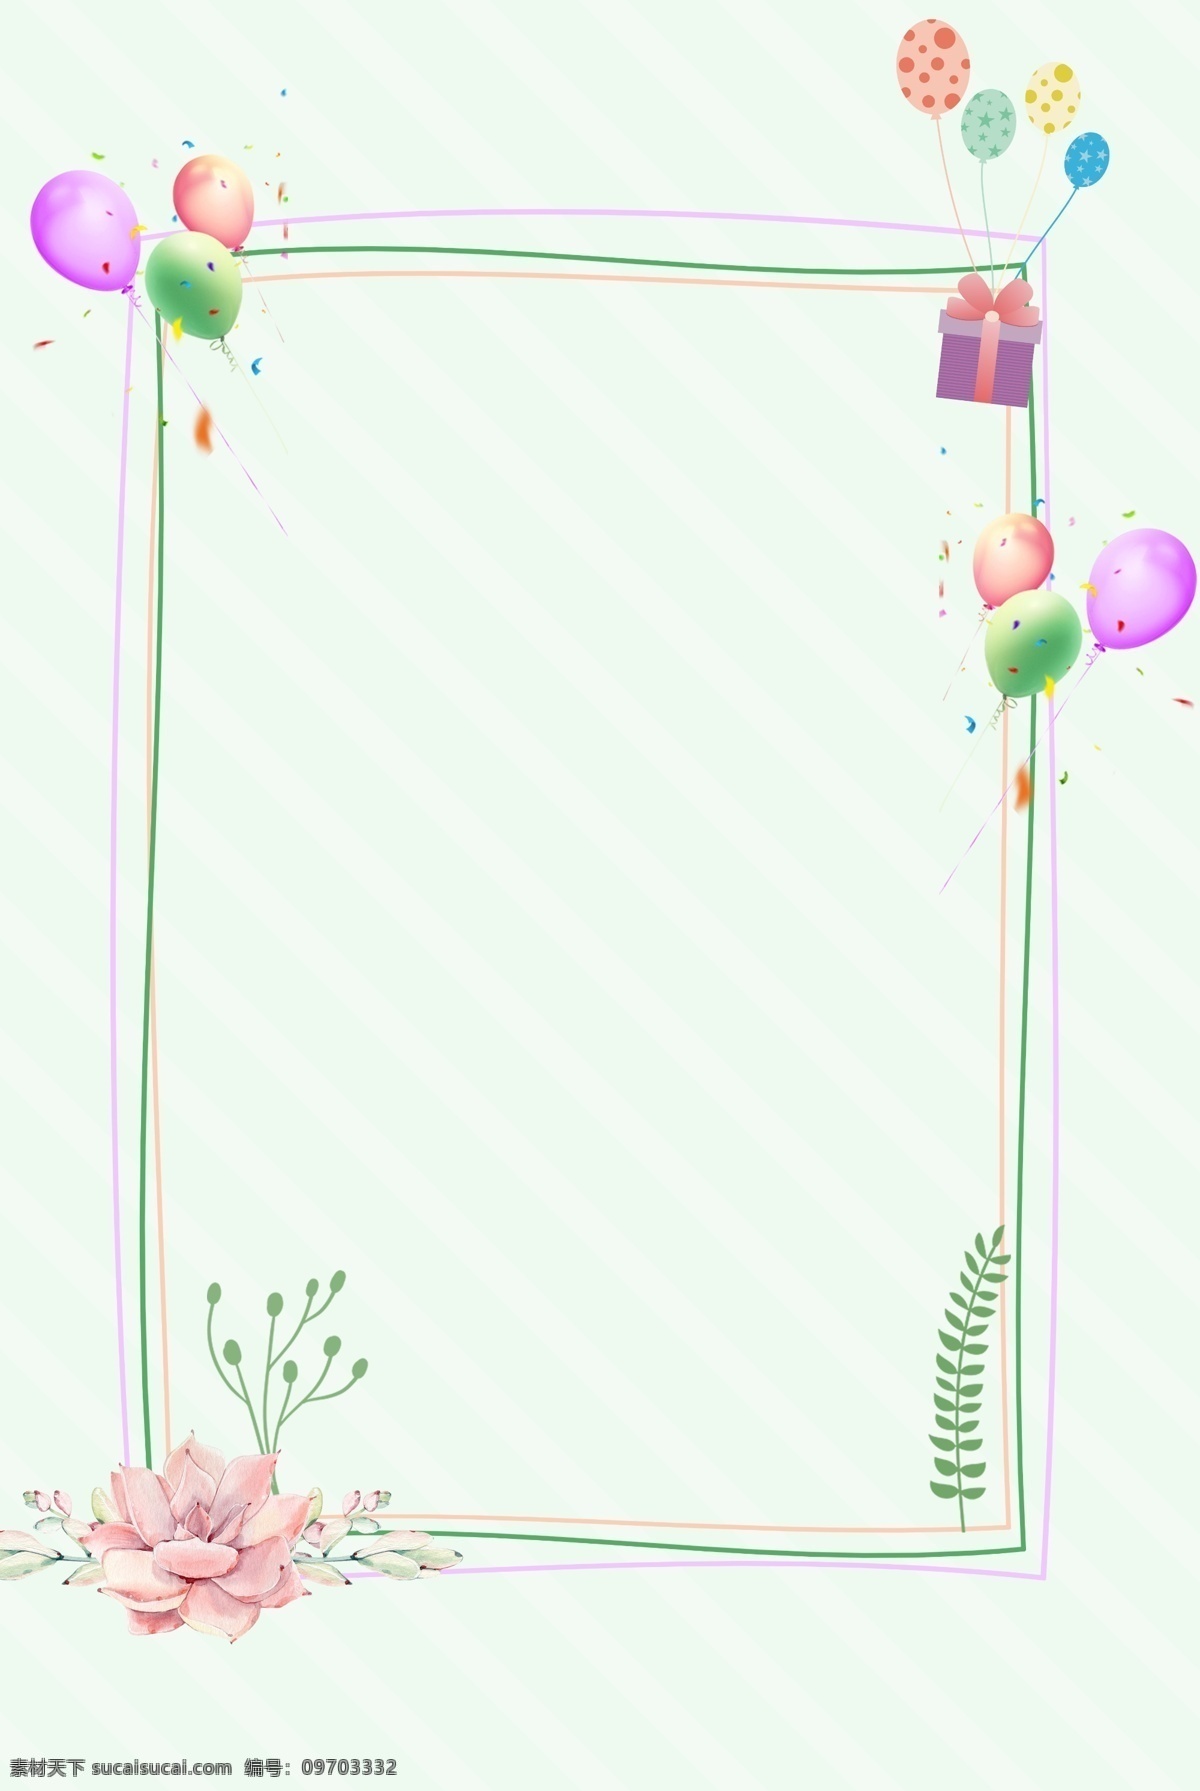 小 清新 气球 花朵 植物 线条 边框 背景 小清新 简约 边框背景 礼物 多肉植物 新品上新